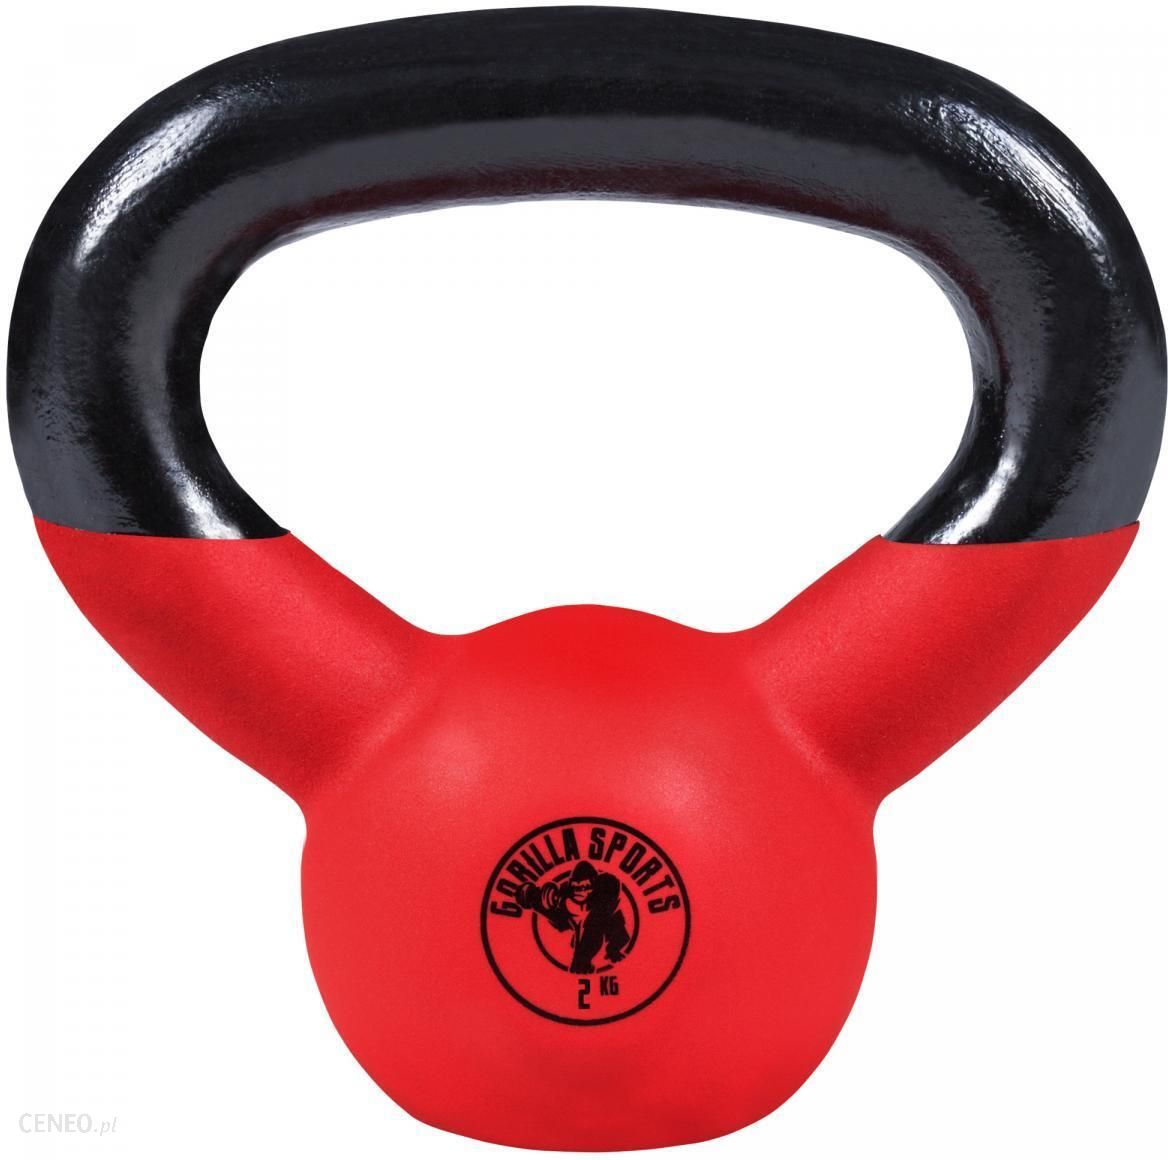 Gorilla Sports Kettlebell Treningowy Gumi Czerwony